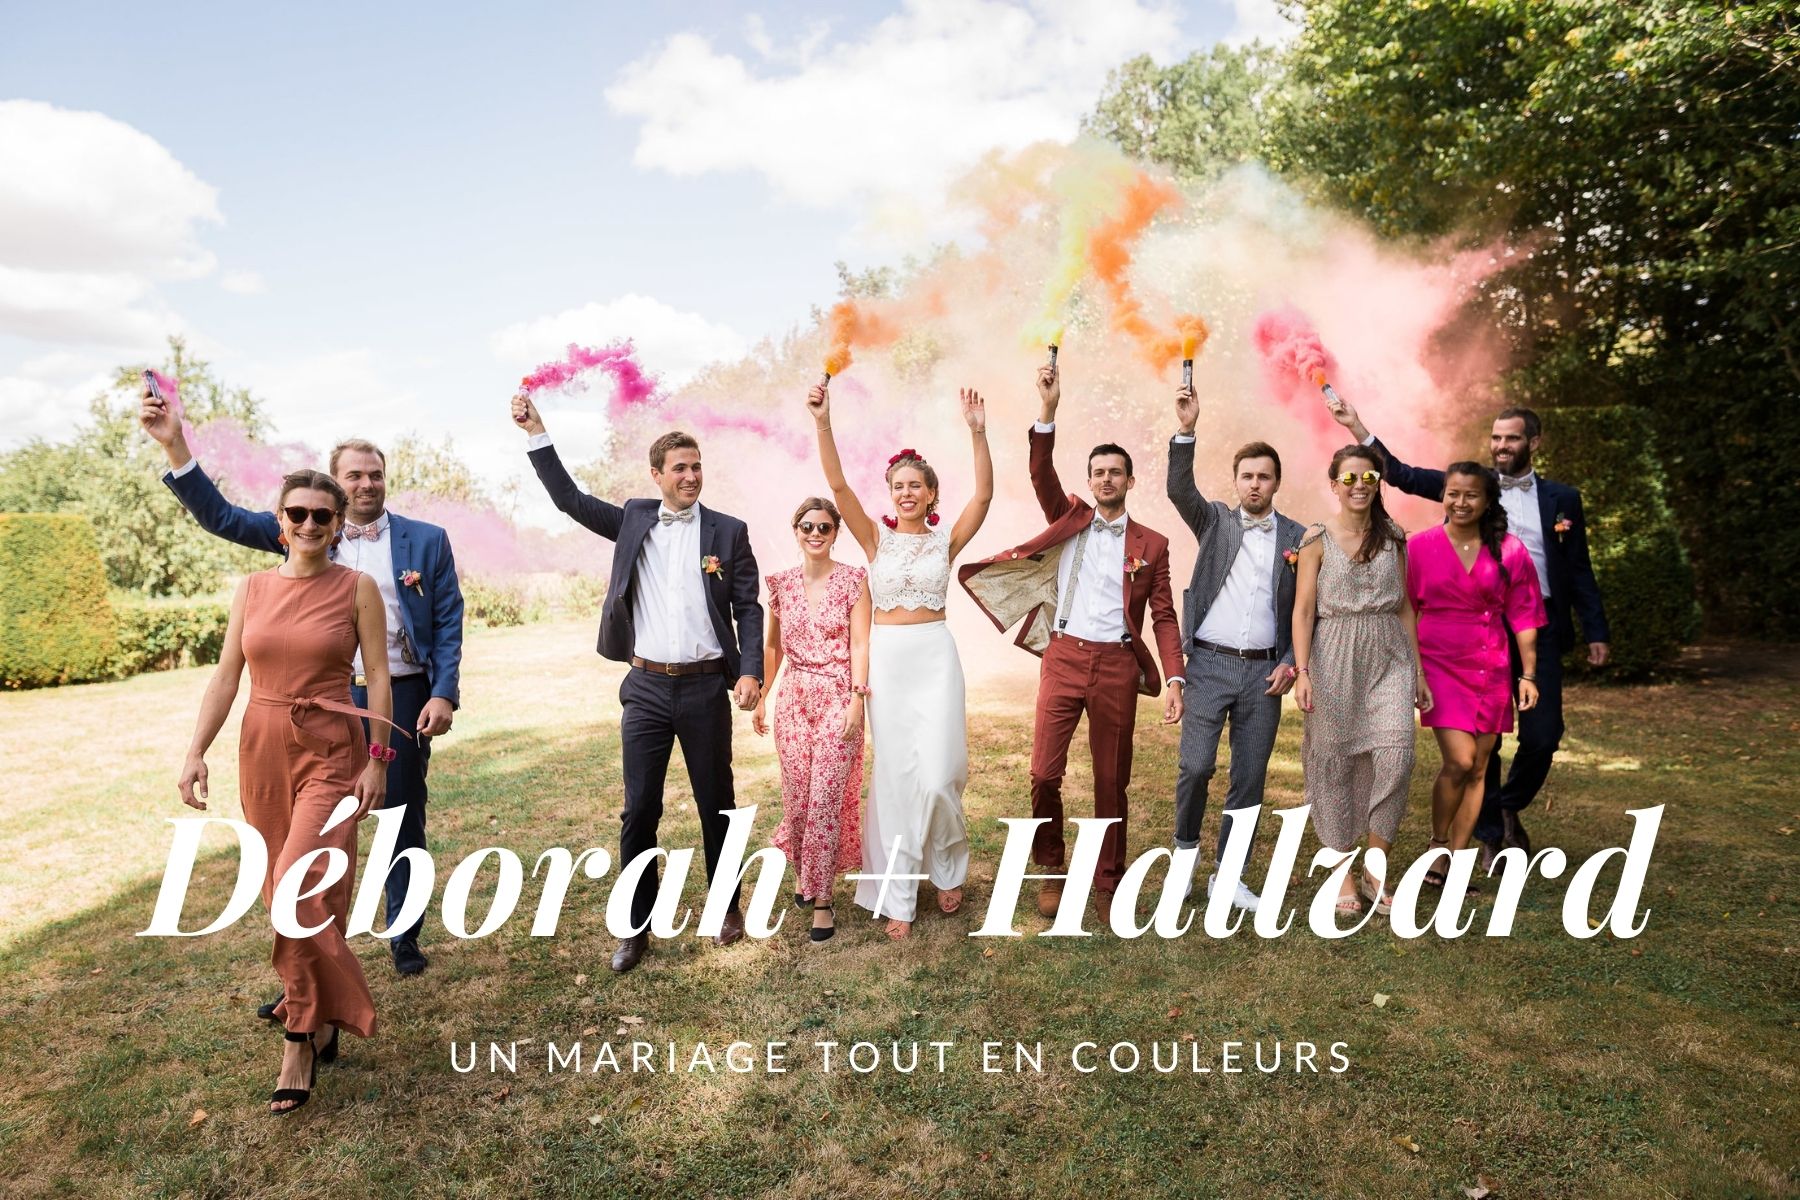 Organisation de mariage bohème - Hera Mariage Wedding Planner - Auvergne - Puy de Dôme - Clermont-Ferrand - Allier - Haute-Loire - Cantal